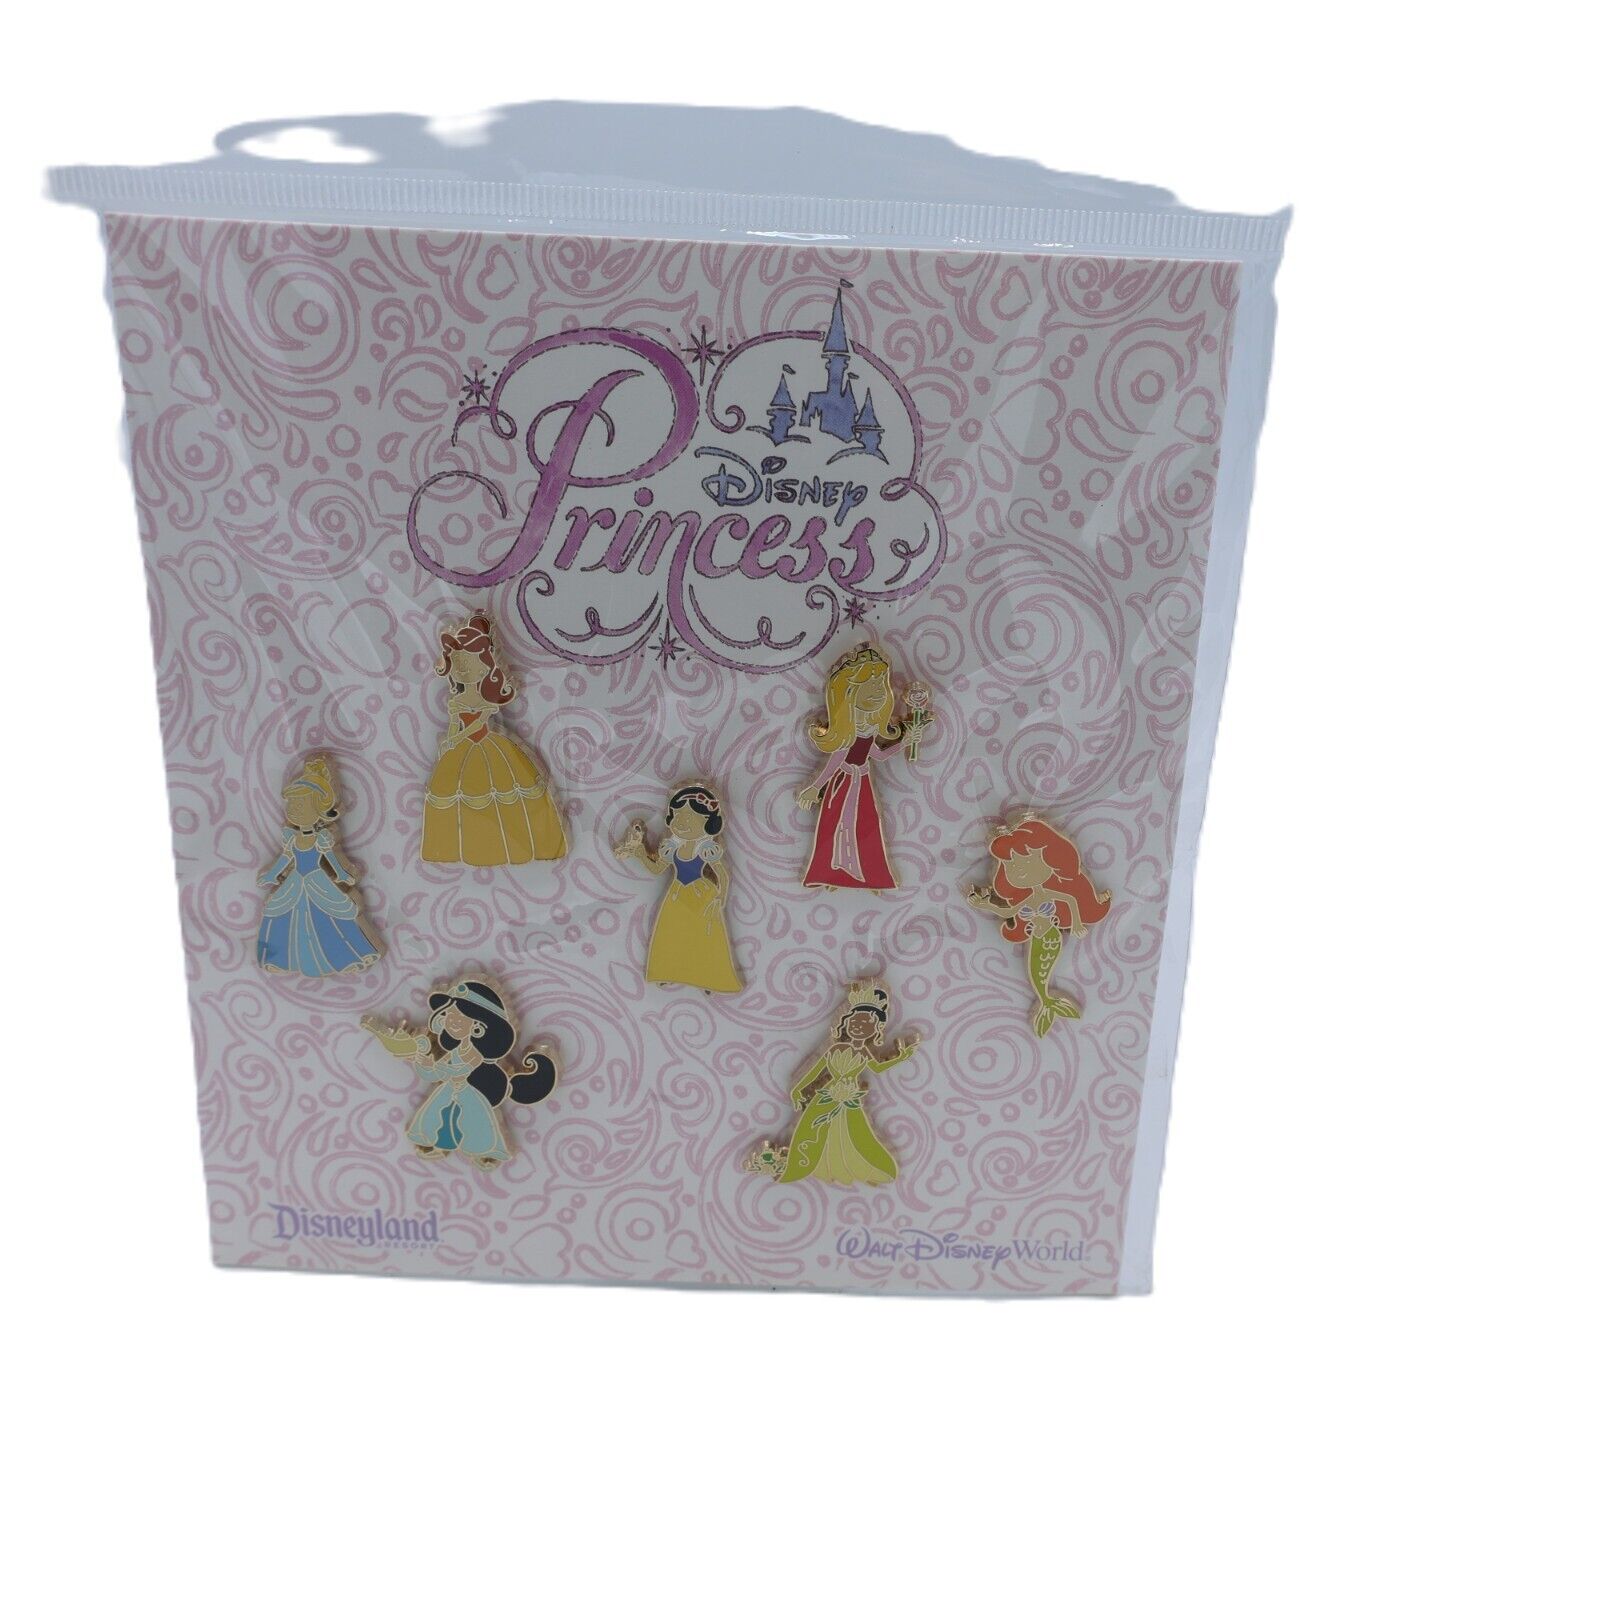 Disney Parks Disney Princess Toddler Princesses Booster Pin Set